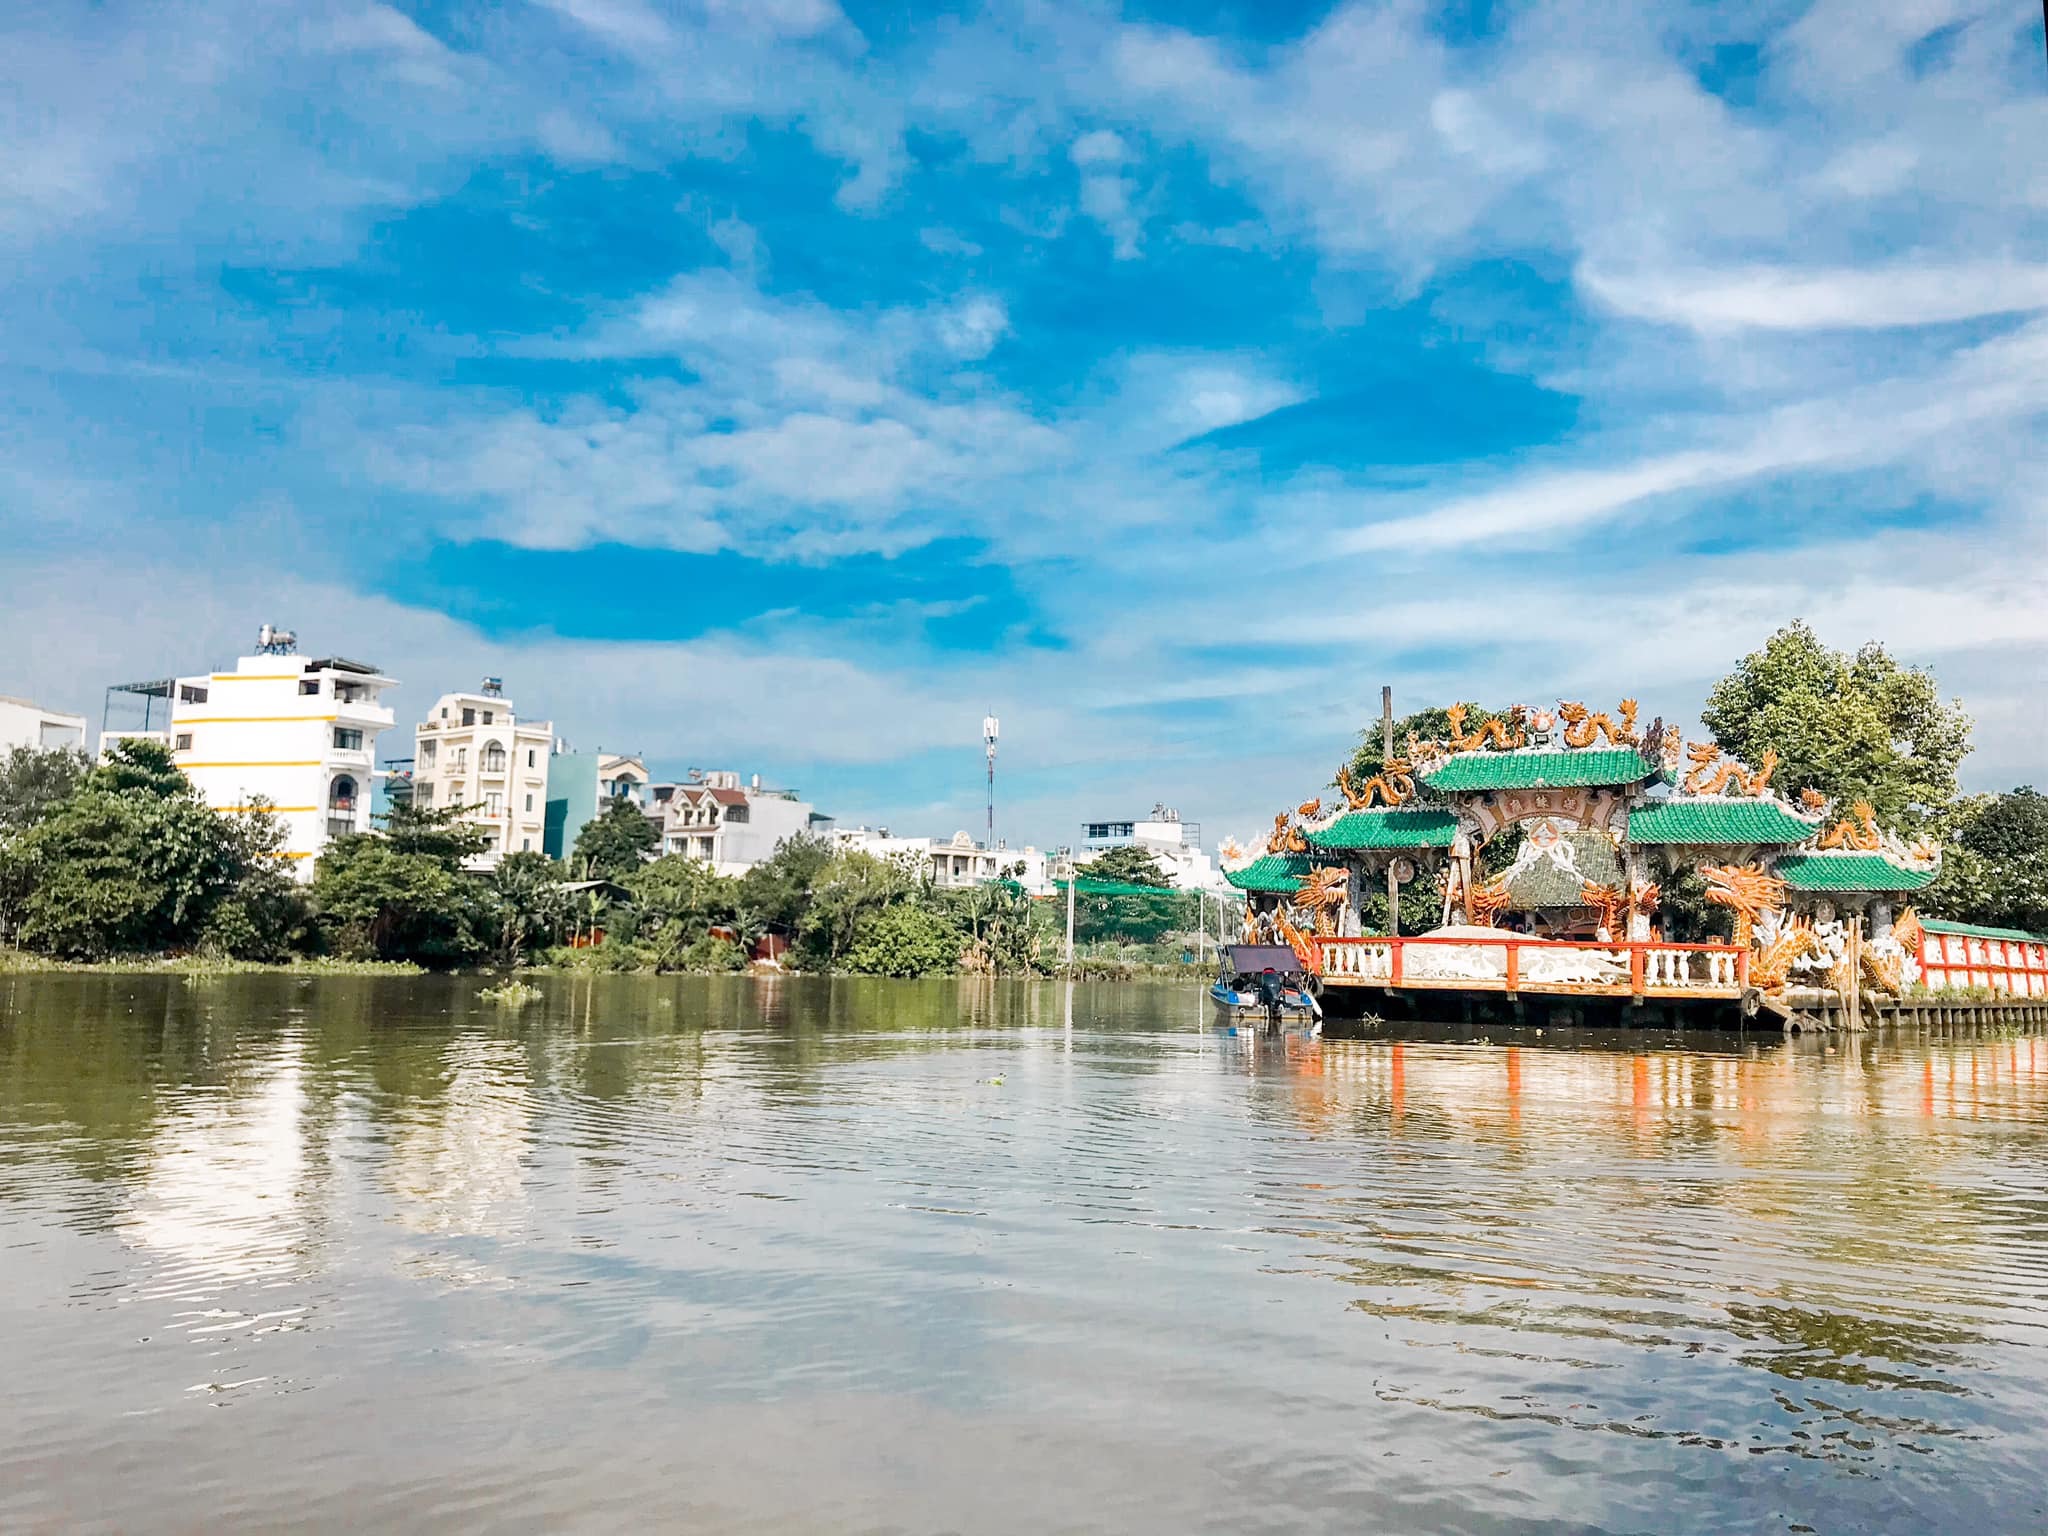 Ngôi miếu 300 năm "lênh đênh" giữa sông Sài Gòn, khách xếp hàng chờ đò đi tìm lịch sử "kì bí" - 1